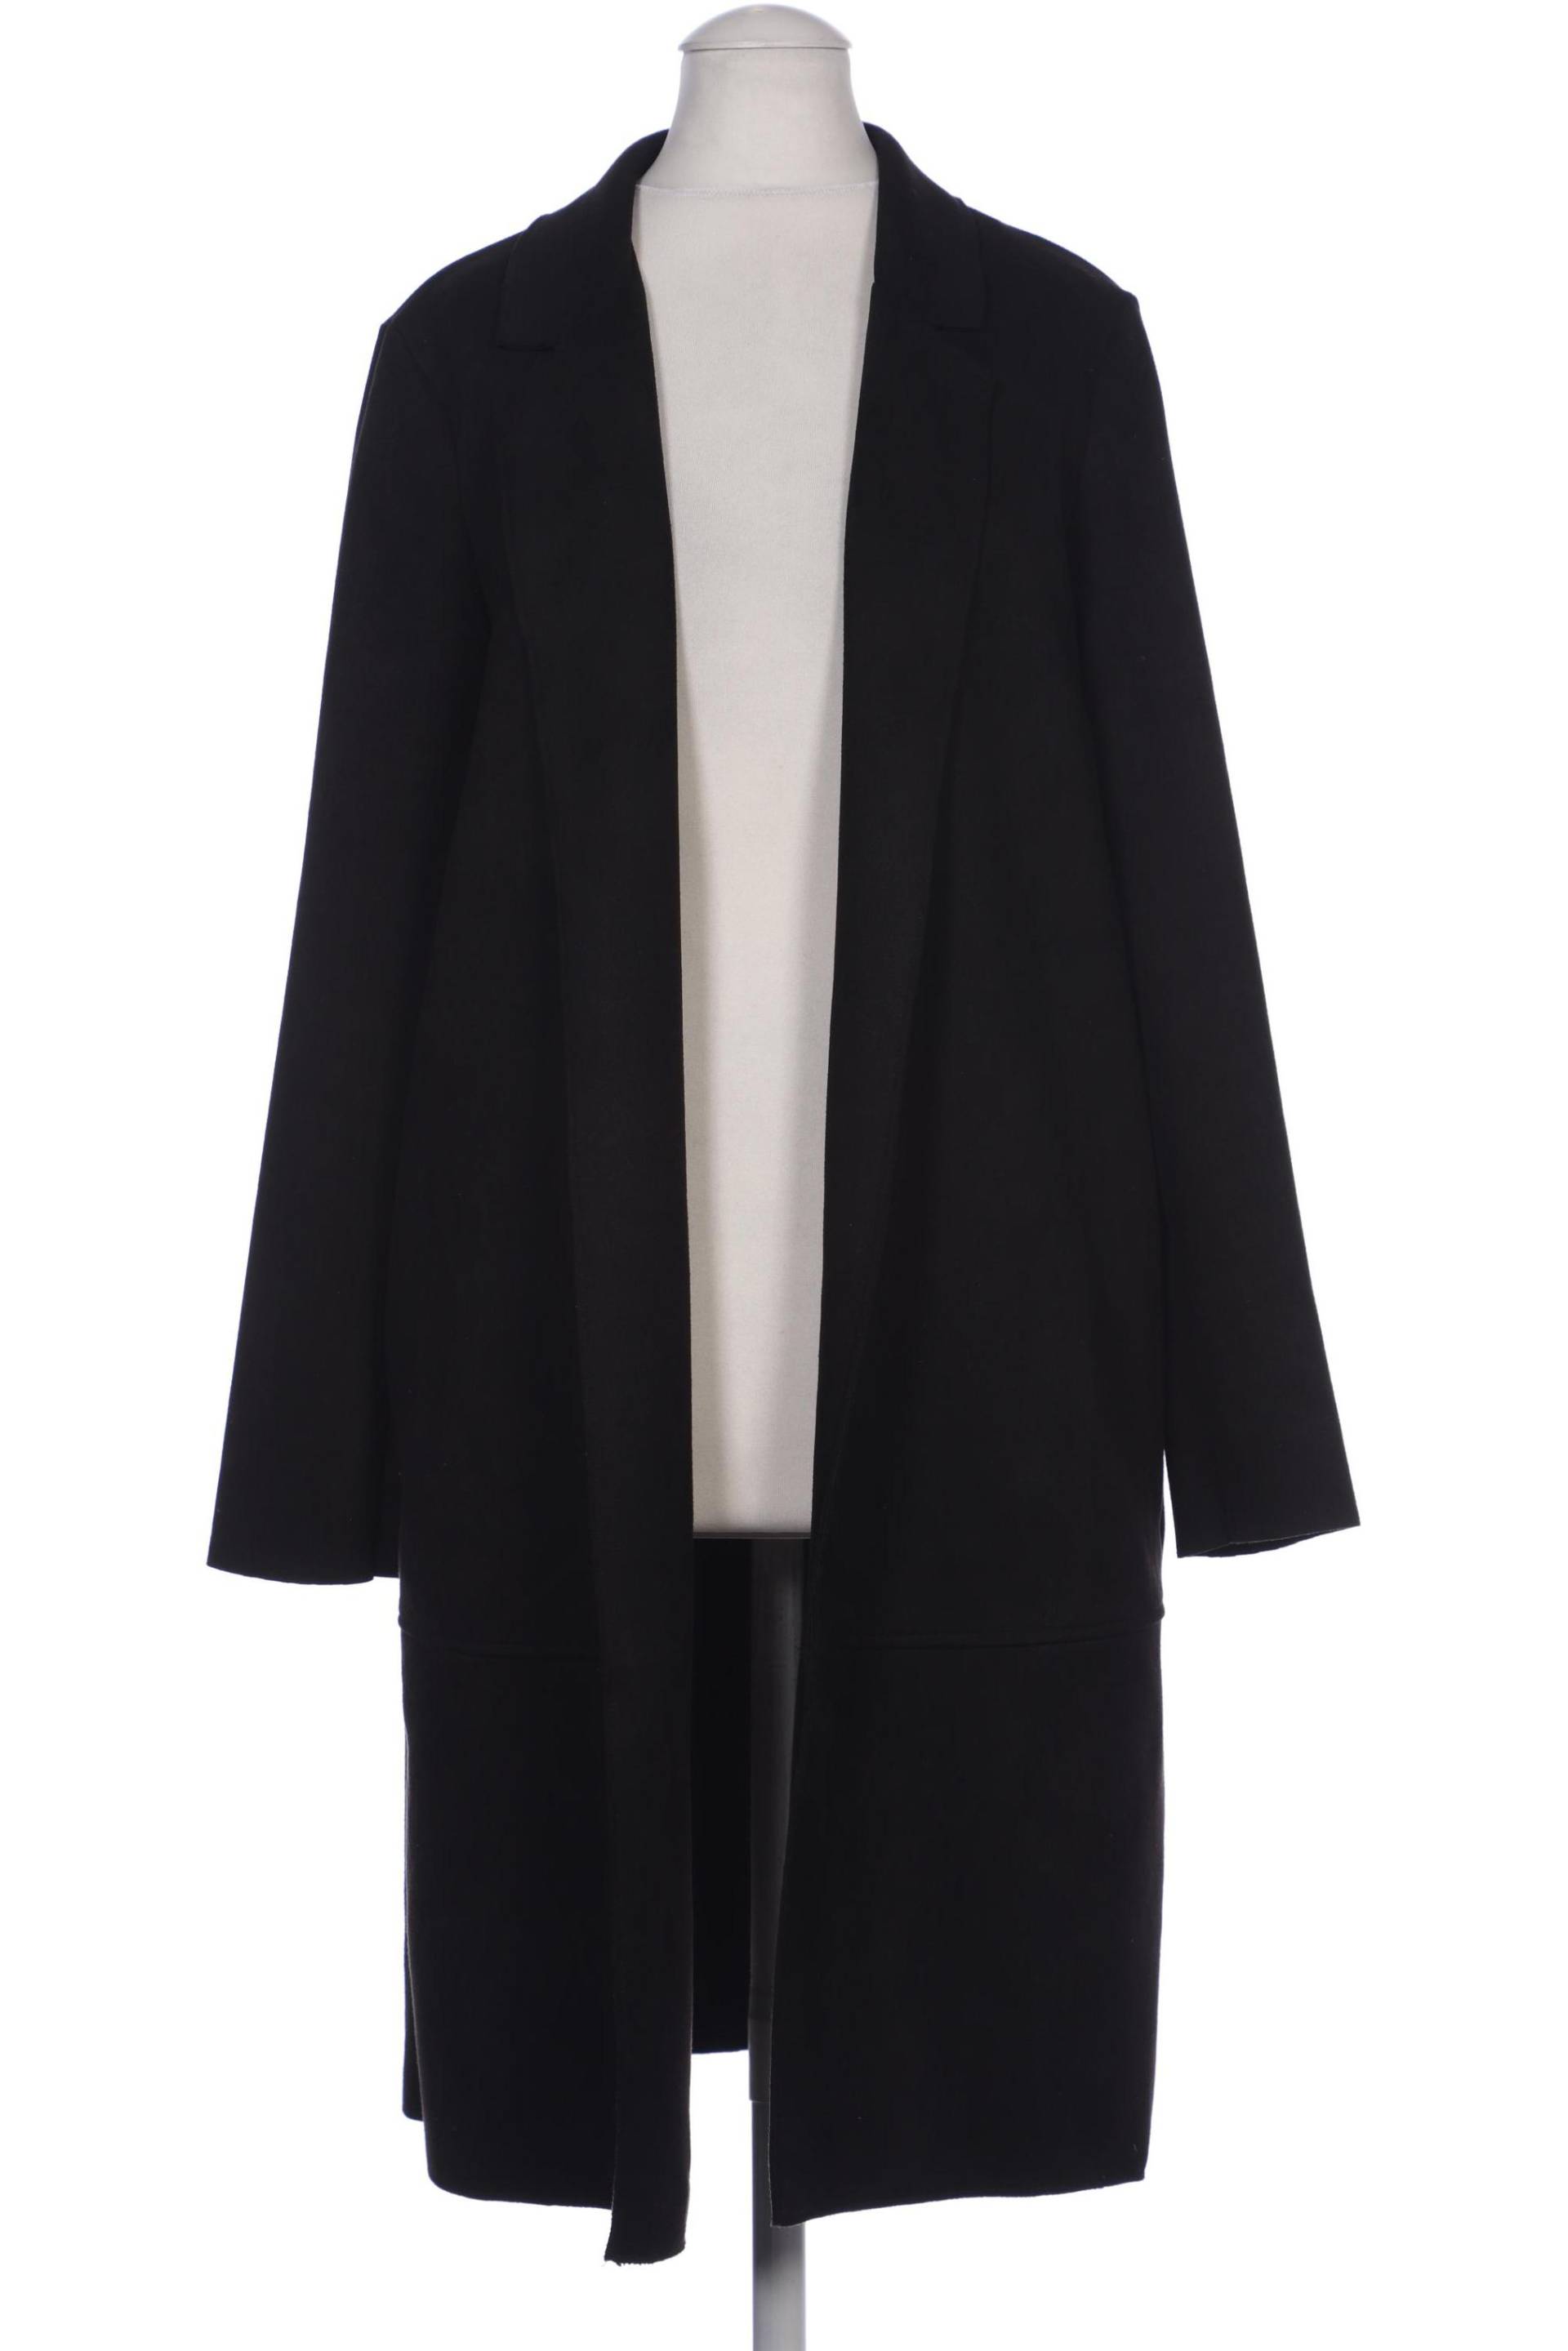 Zara Damen Mantel, schwarz, Gr. 34 von ZARA